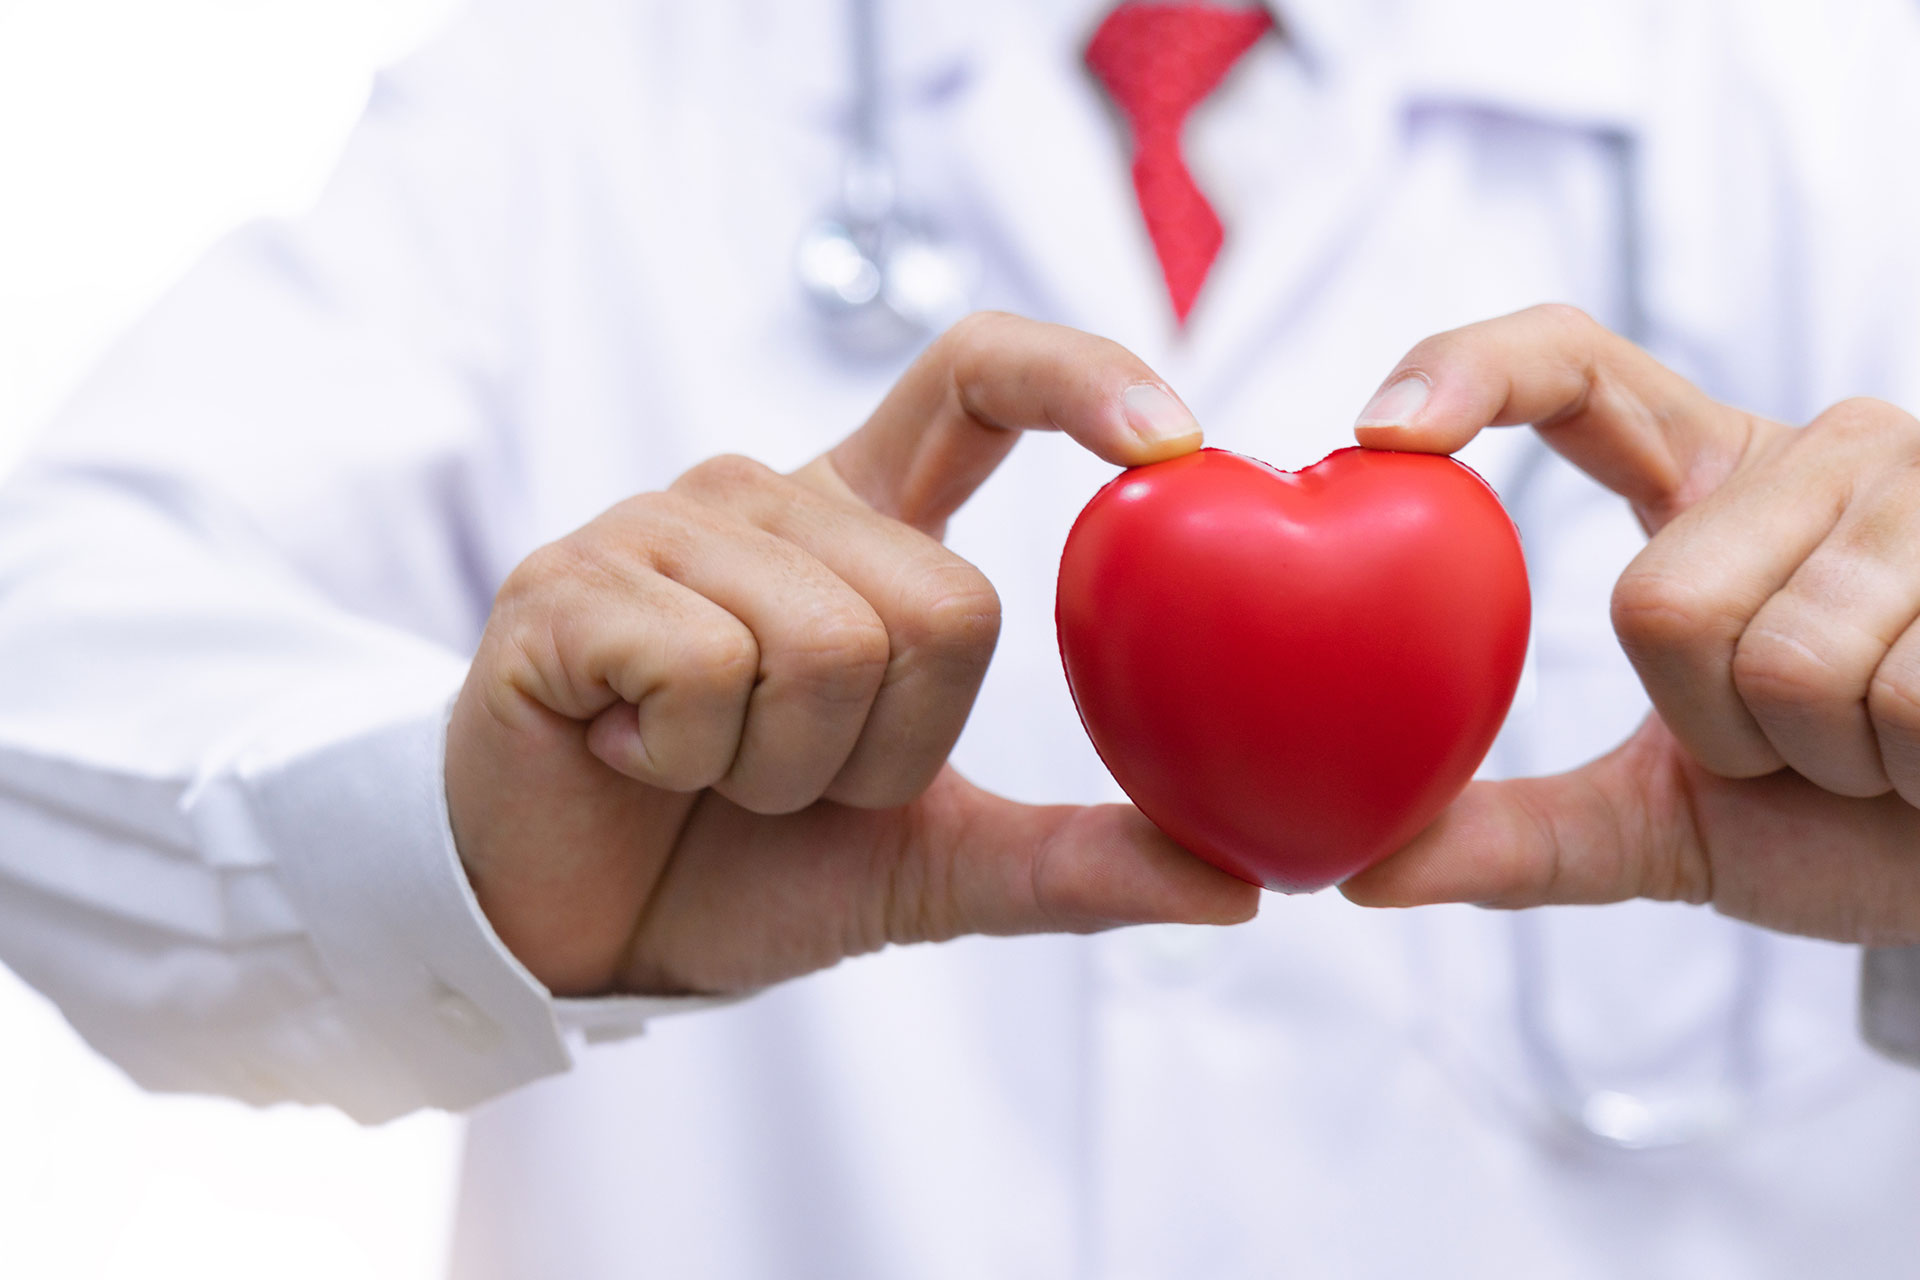 Deepak L. Bhatt sostiene que un estilo de vida saludable contribuye en gran medida a reducir el riesgo de enfermedades cardíacas
(Getty)